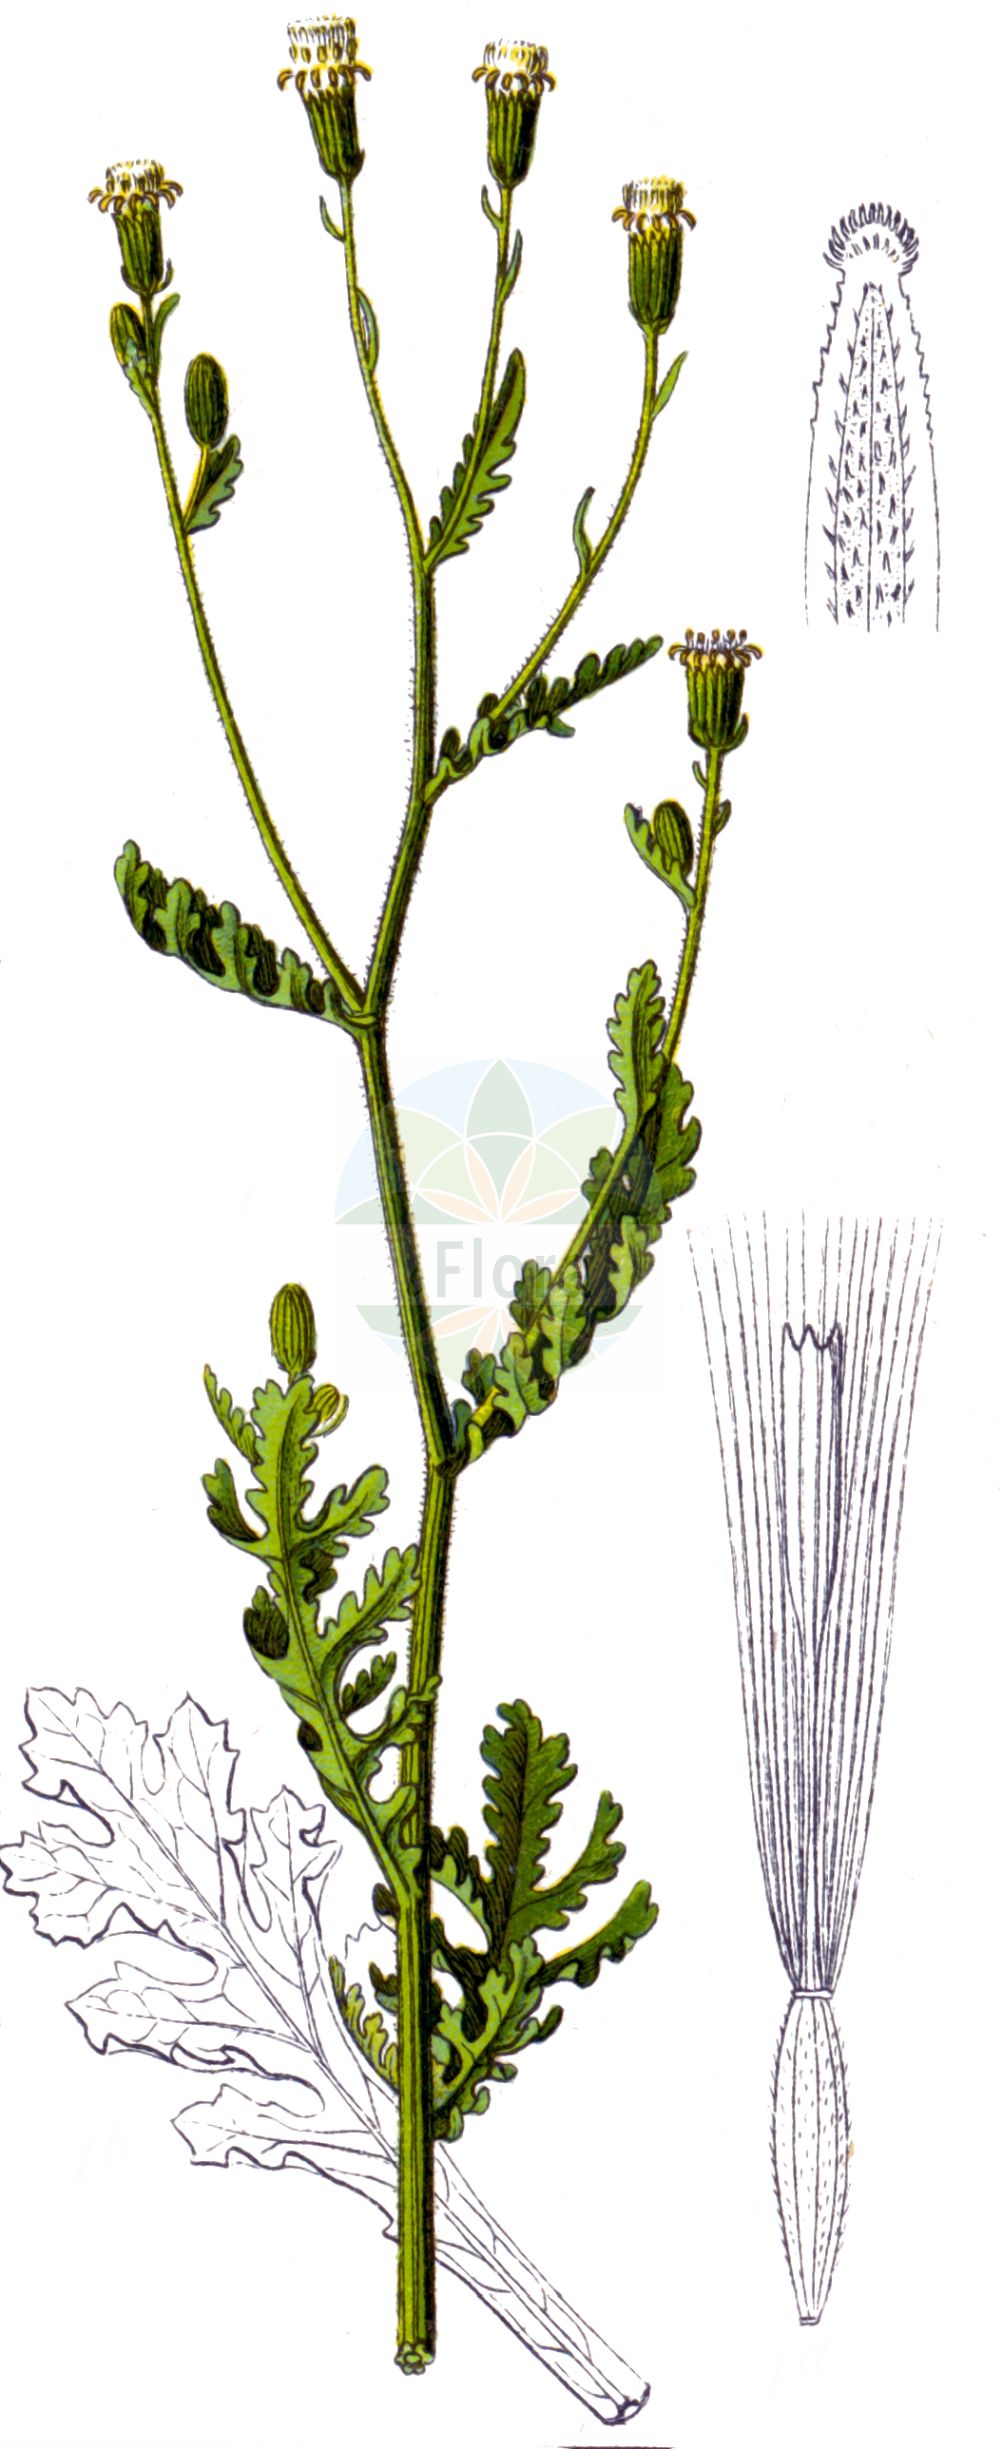 Historische Abbildung von Senecio viscosus (Klebriges Greiskraut - Sticky Groundsel). Das Bild zeigt Blatt, Bluete, Frucht und Same. ---- Historical Drawing of Senecio viscosus (Klebriges Greiskraut - Sticky Groundsel). The image is showing leaf, flower, fruit and seed.(Senecio viscosus,Klebriges Greiskraut,Sticky Groundsel,Senecio calvertii,Senecio viscosus,Klebriges Greiskraut,Sticky Groundsel,Fetid Groundsel,Sticky Ragwort,Stinking Groundsel,Senecio,Greiskraut,Ragwort,Asteraceae,Korbblütengewächse,Daisy family,Blatt,Bluete,Frucht,Same,leaf,flower,fruit,seed,Sturm (1796f))